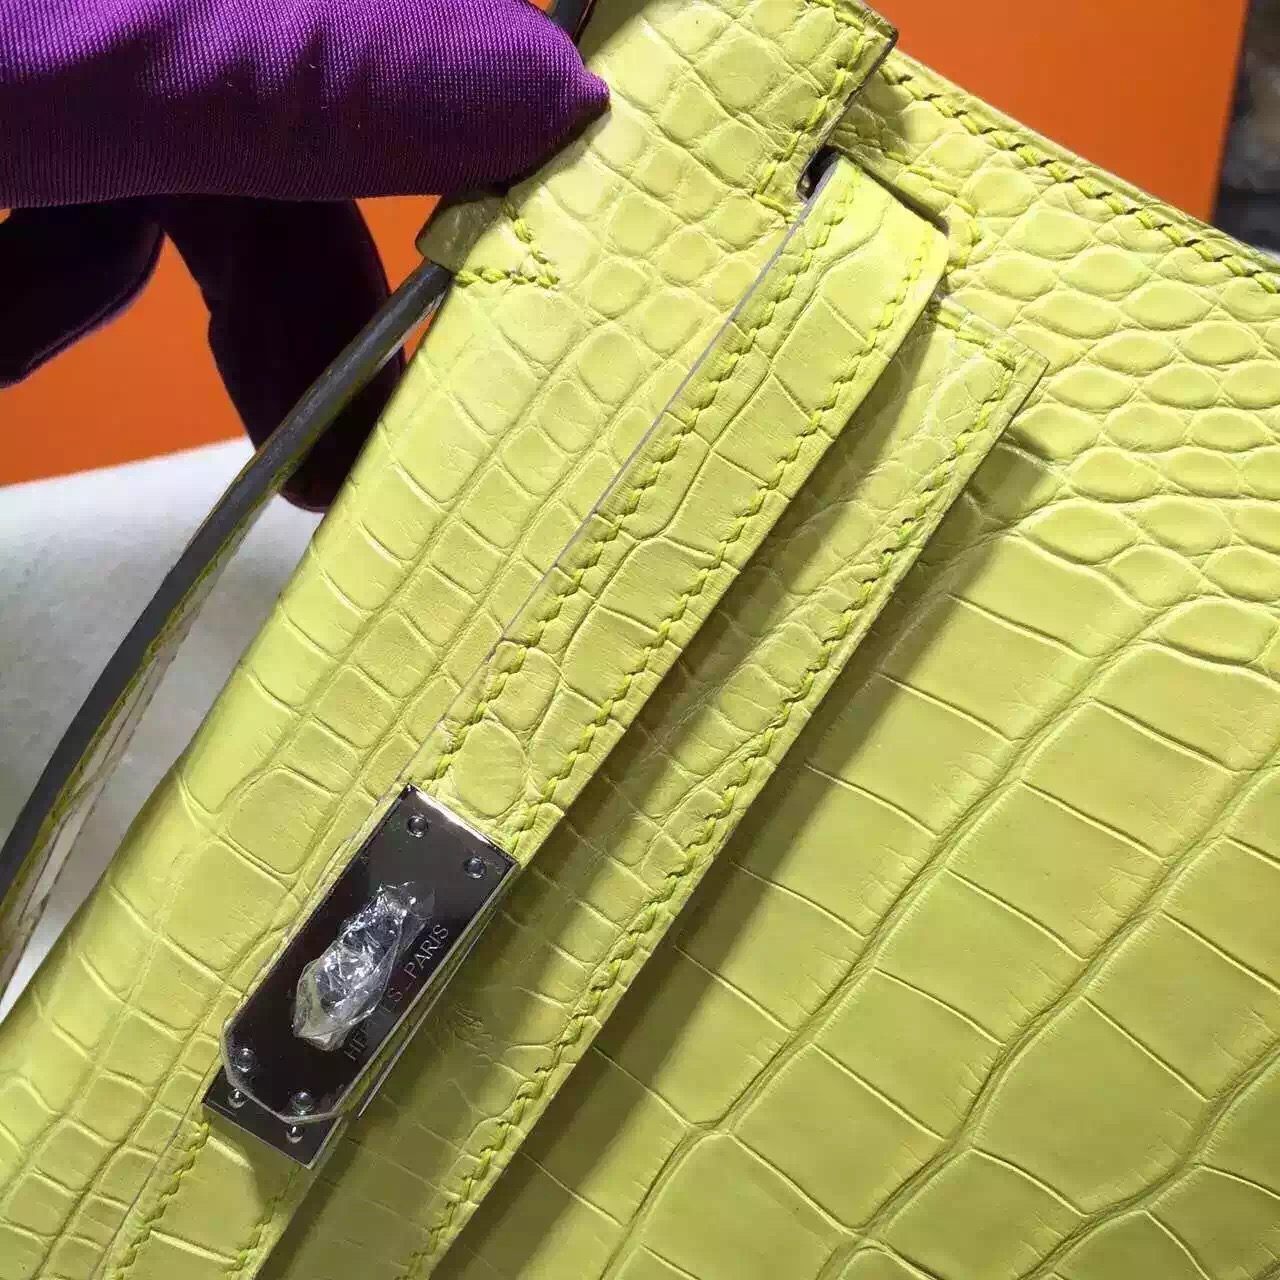 Discount Hermes Crocodile Skin Mini Kelly Bag in 9K Lemon Yellow Women&#8217;s Clutch